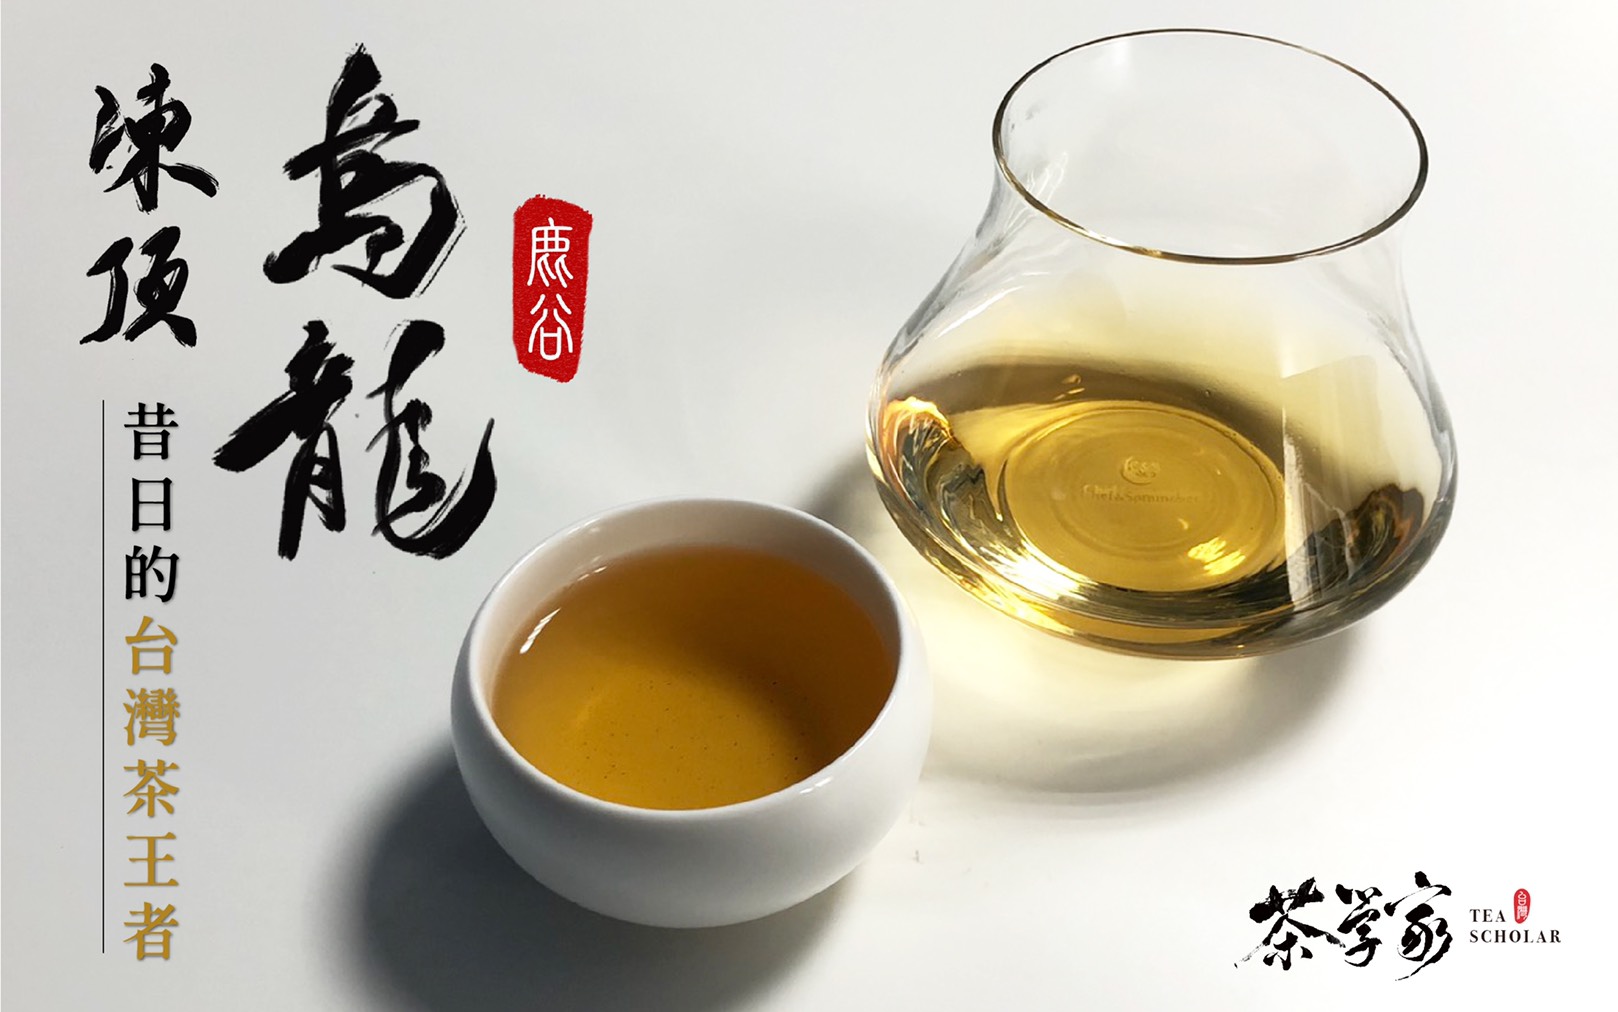 凍頂烏龍茶 - Tongding Oolong tea 茶學家 Tea Scholar - 台灣茶 Taiwan Tea 烏龍茶 鹿谷茶區